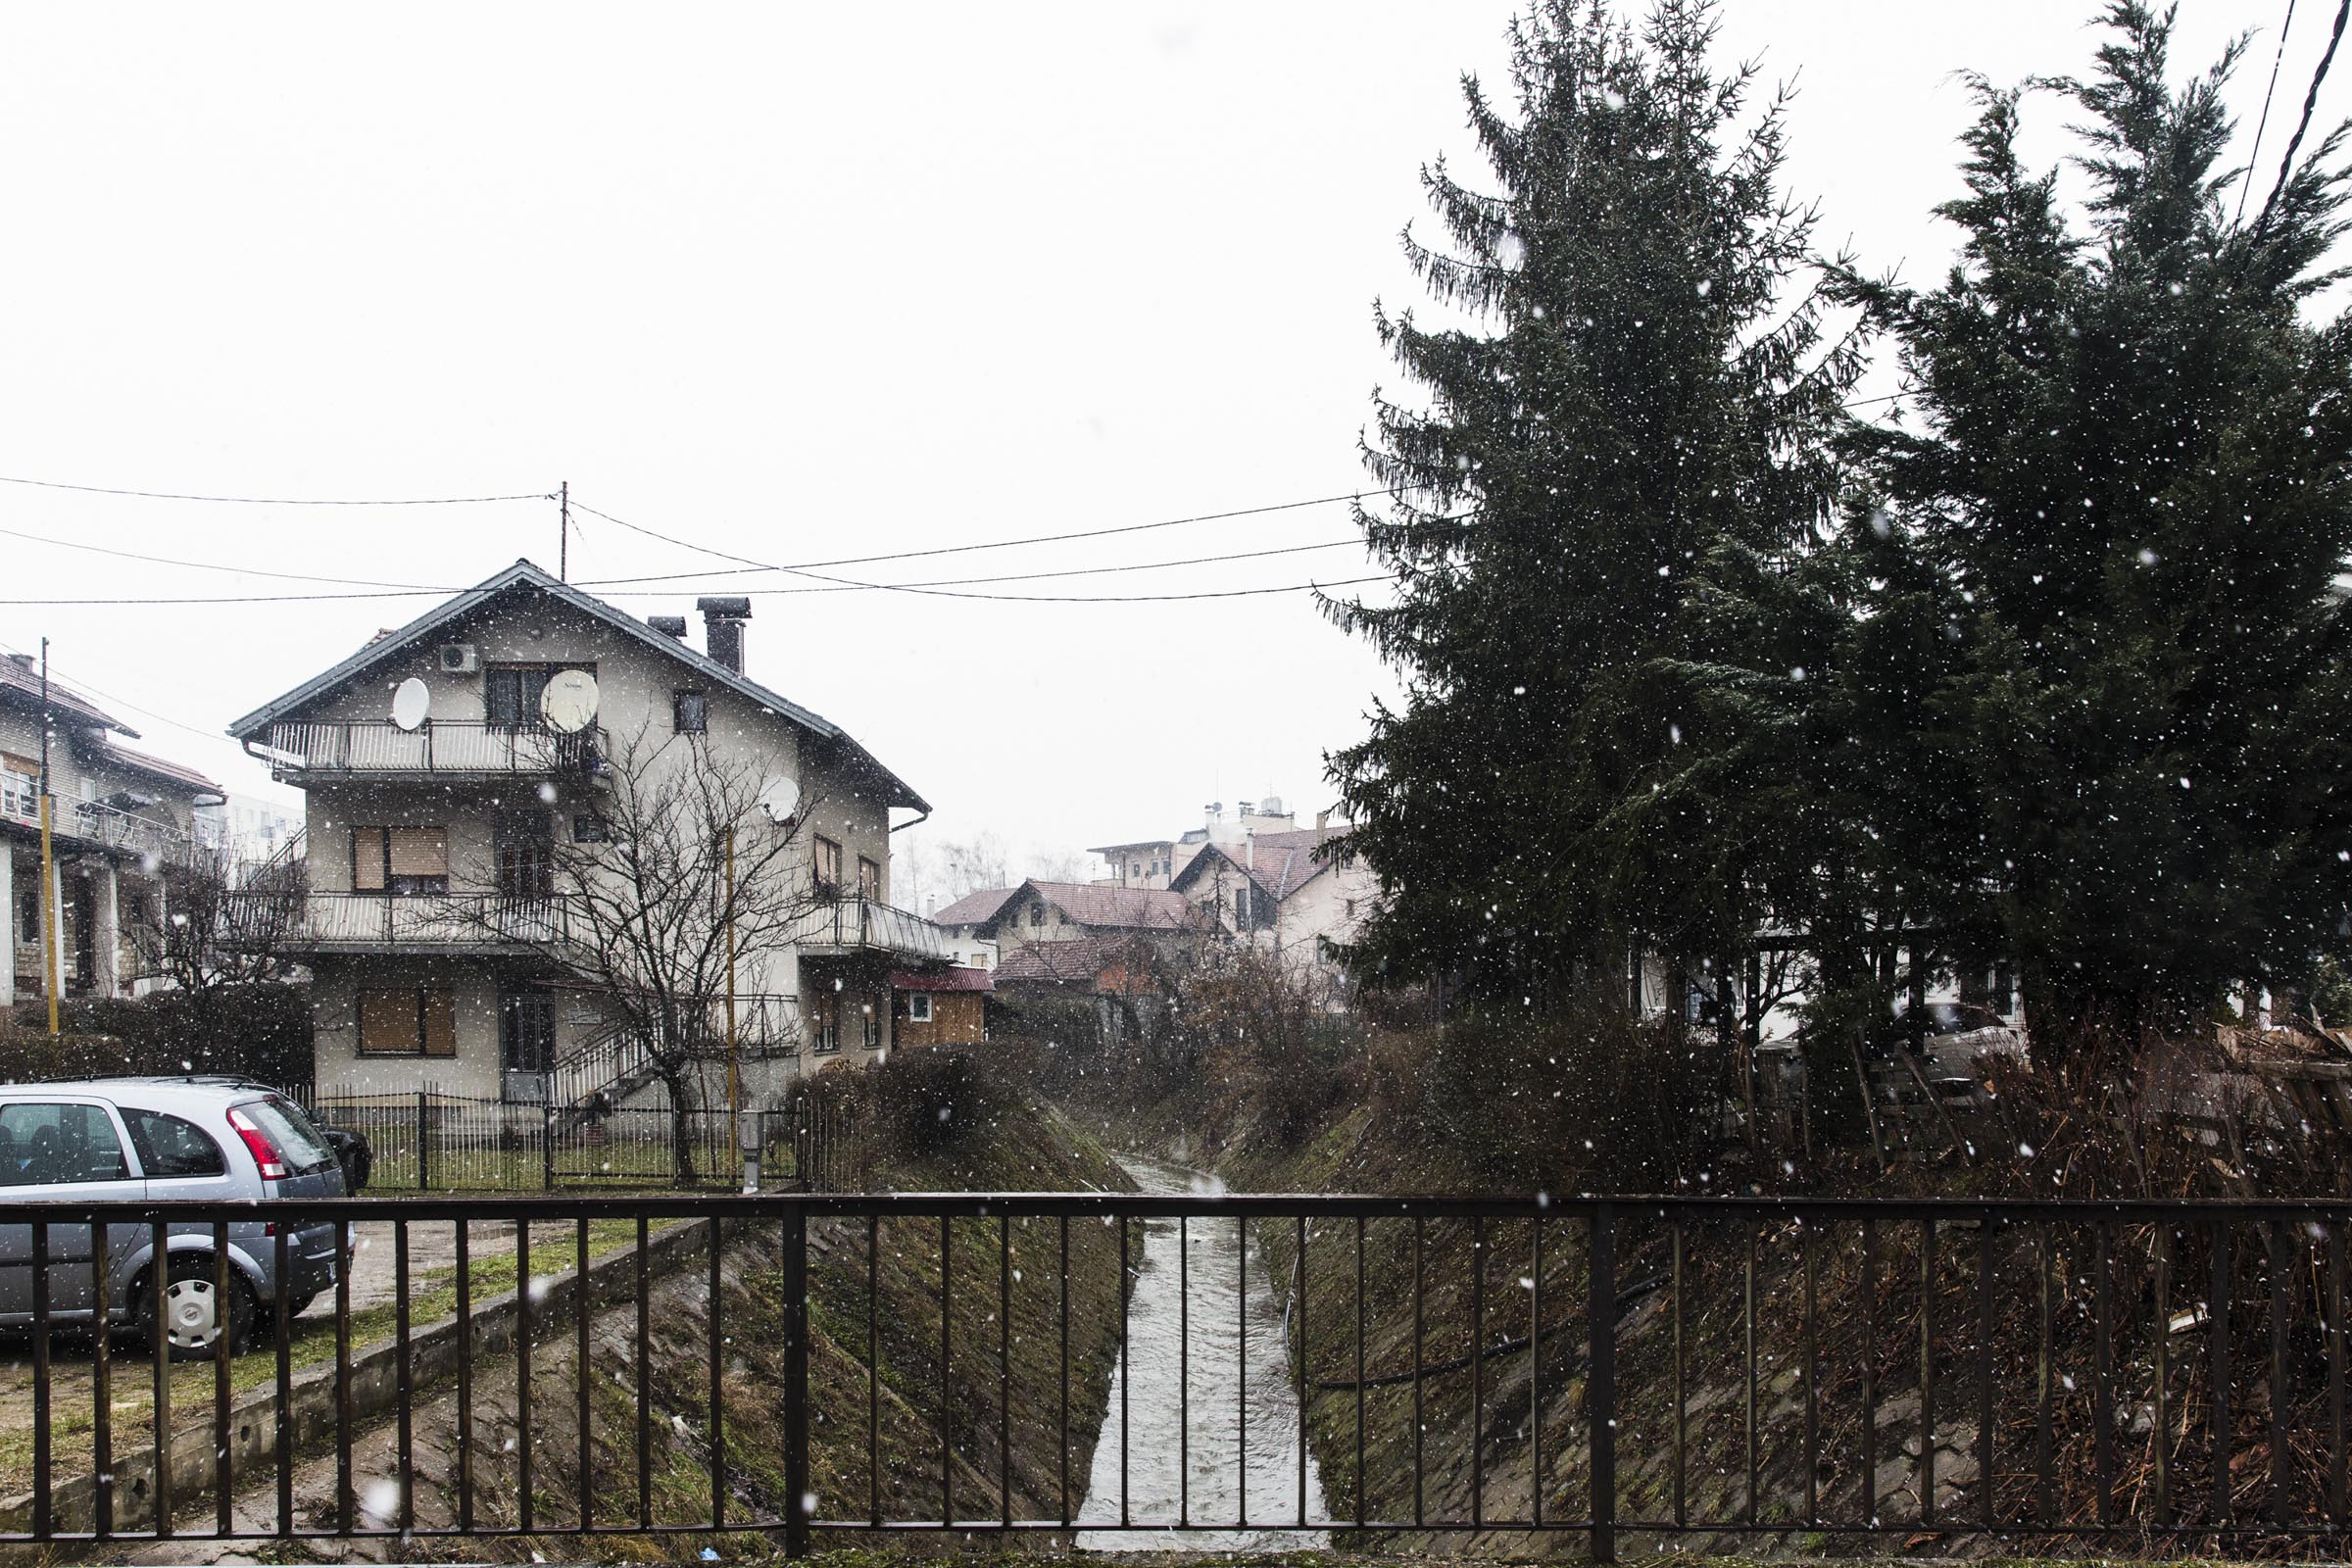 19. Januar 2019. Die Behörden behaupten, dass David Dragičević sich das Leben genommen habe, indem er von dieser kleinen Brücke sprang, die sich nur wenige Meter von dem Haus entfernt befindet, in das er zuvor eingebrochen sein soll.